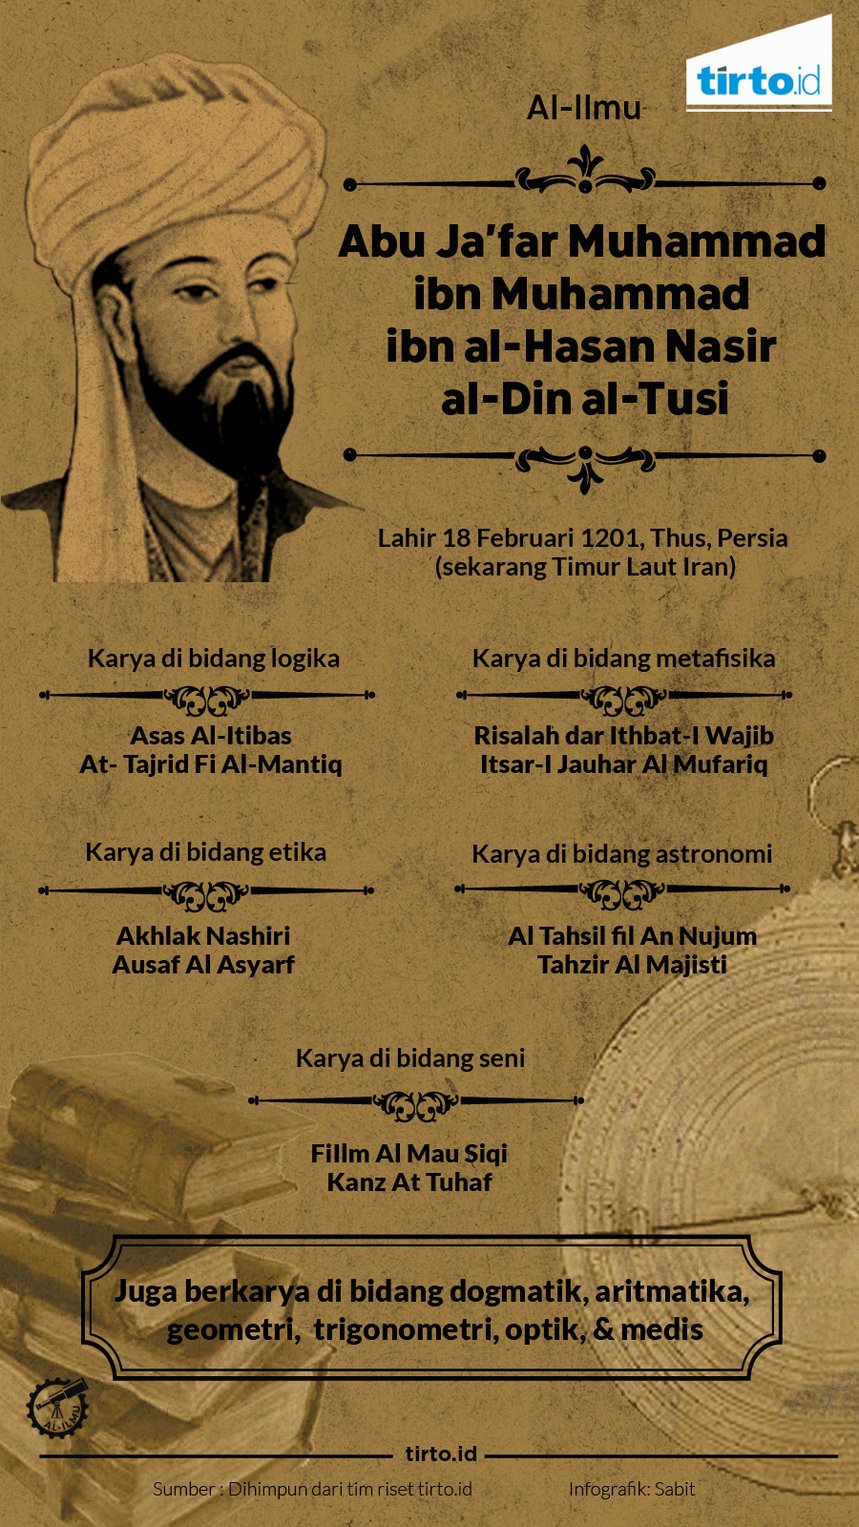 Infografik abu jafar muhammad al ilmu